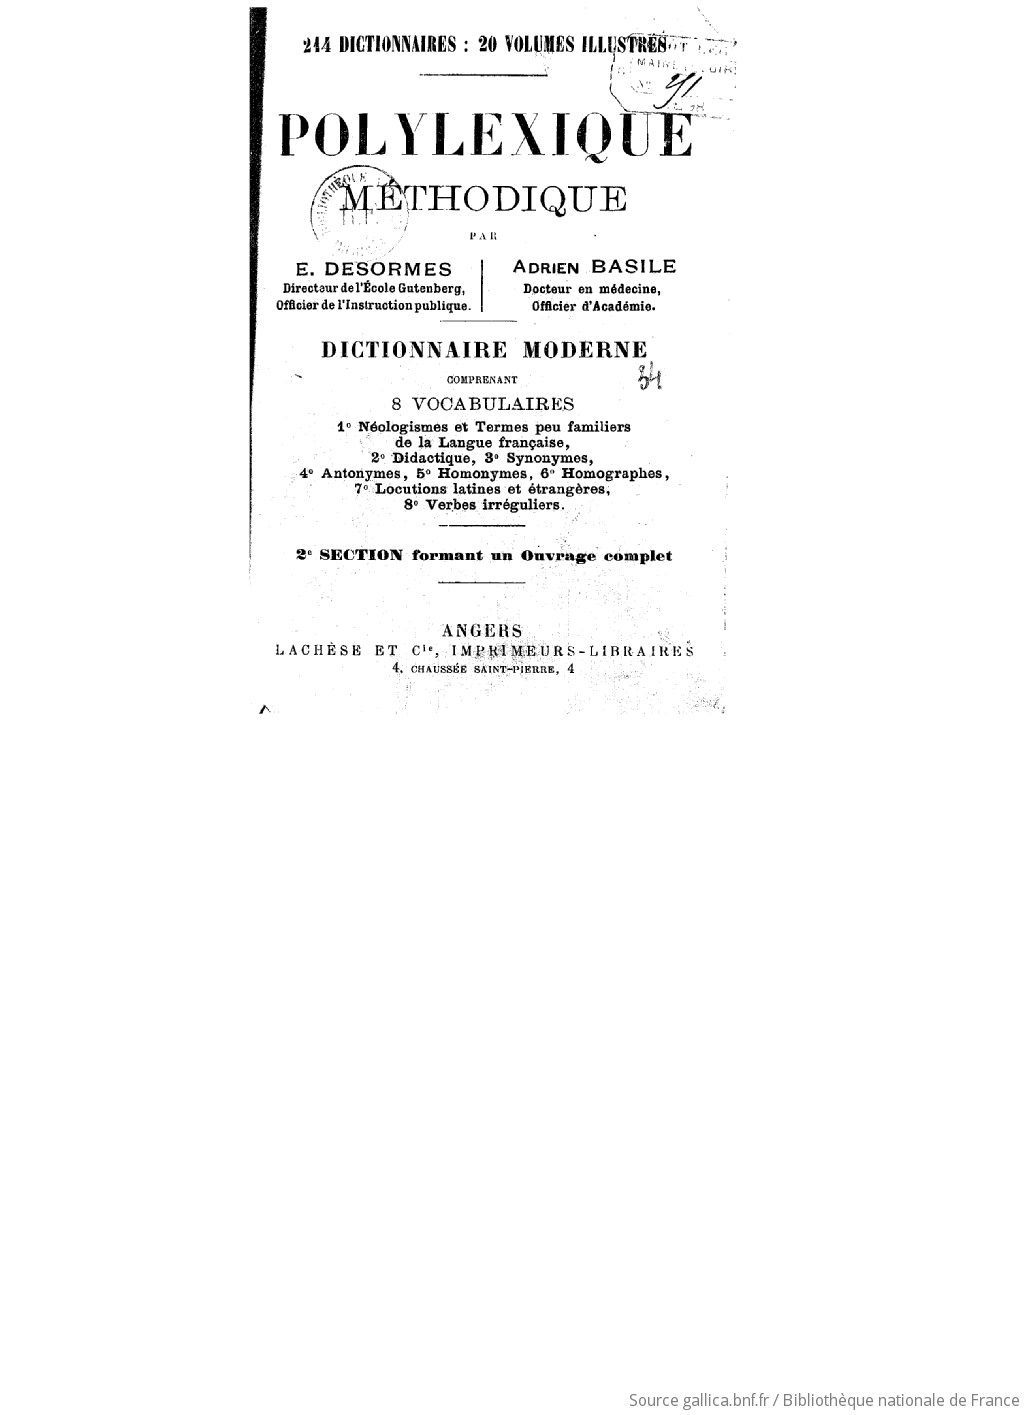 Polylexique méthodique. Section 2 / E. Desormes et Adrien Basile